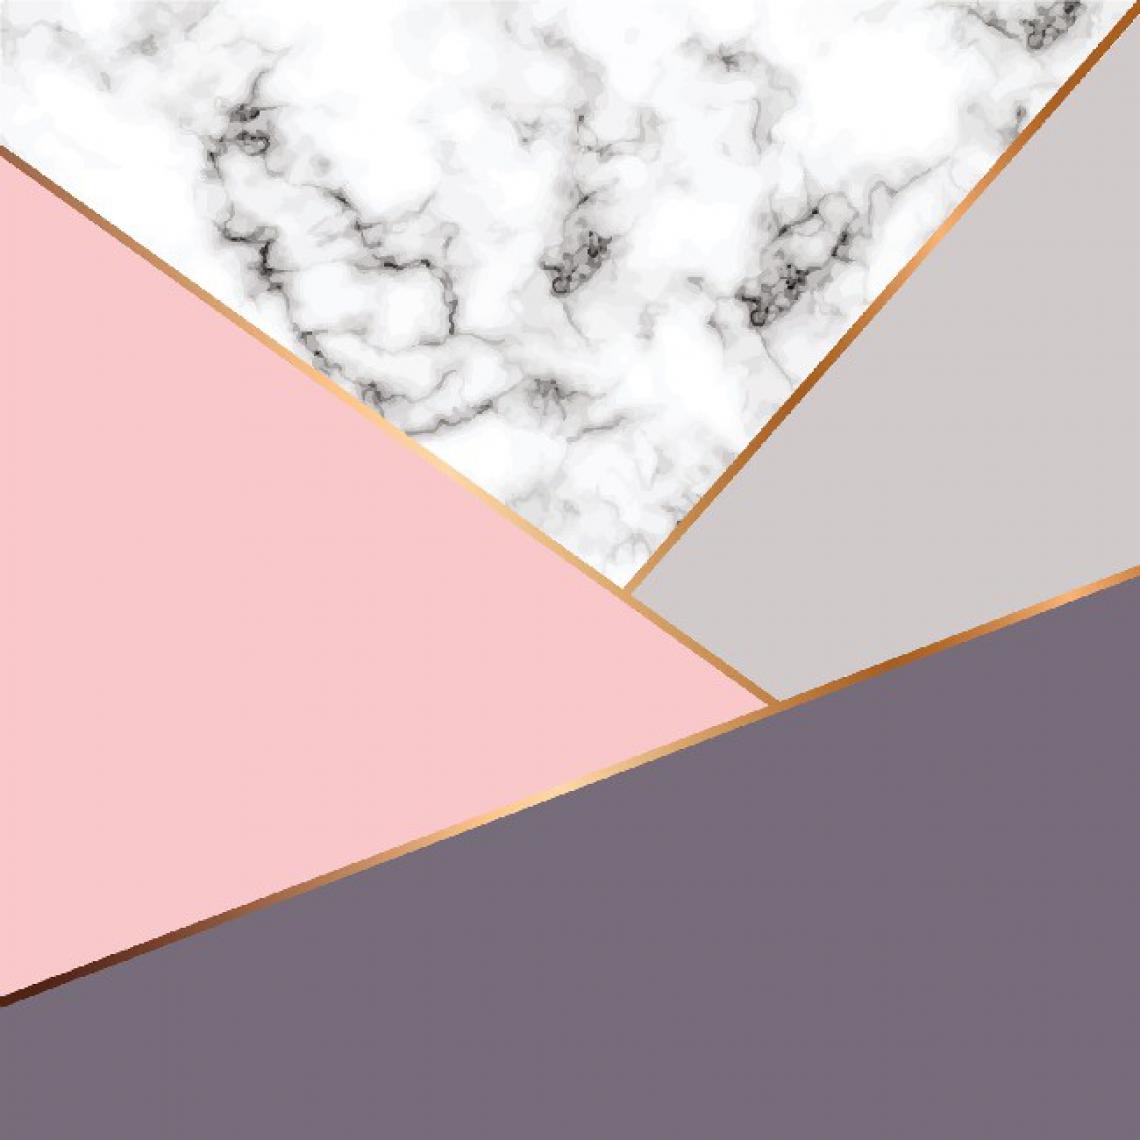 Homemania - HOMEMANIA Tapis Imprimé Pink Of Happiness 2 - Géométrique - Décoration de Maison - Antidérapant - Pour Salon, séjour, chambre à coucher - Multicolore en Polyester, Coton, 100 x 200 cm - Tapis